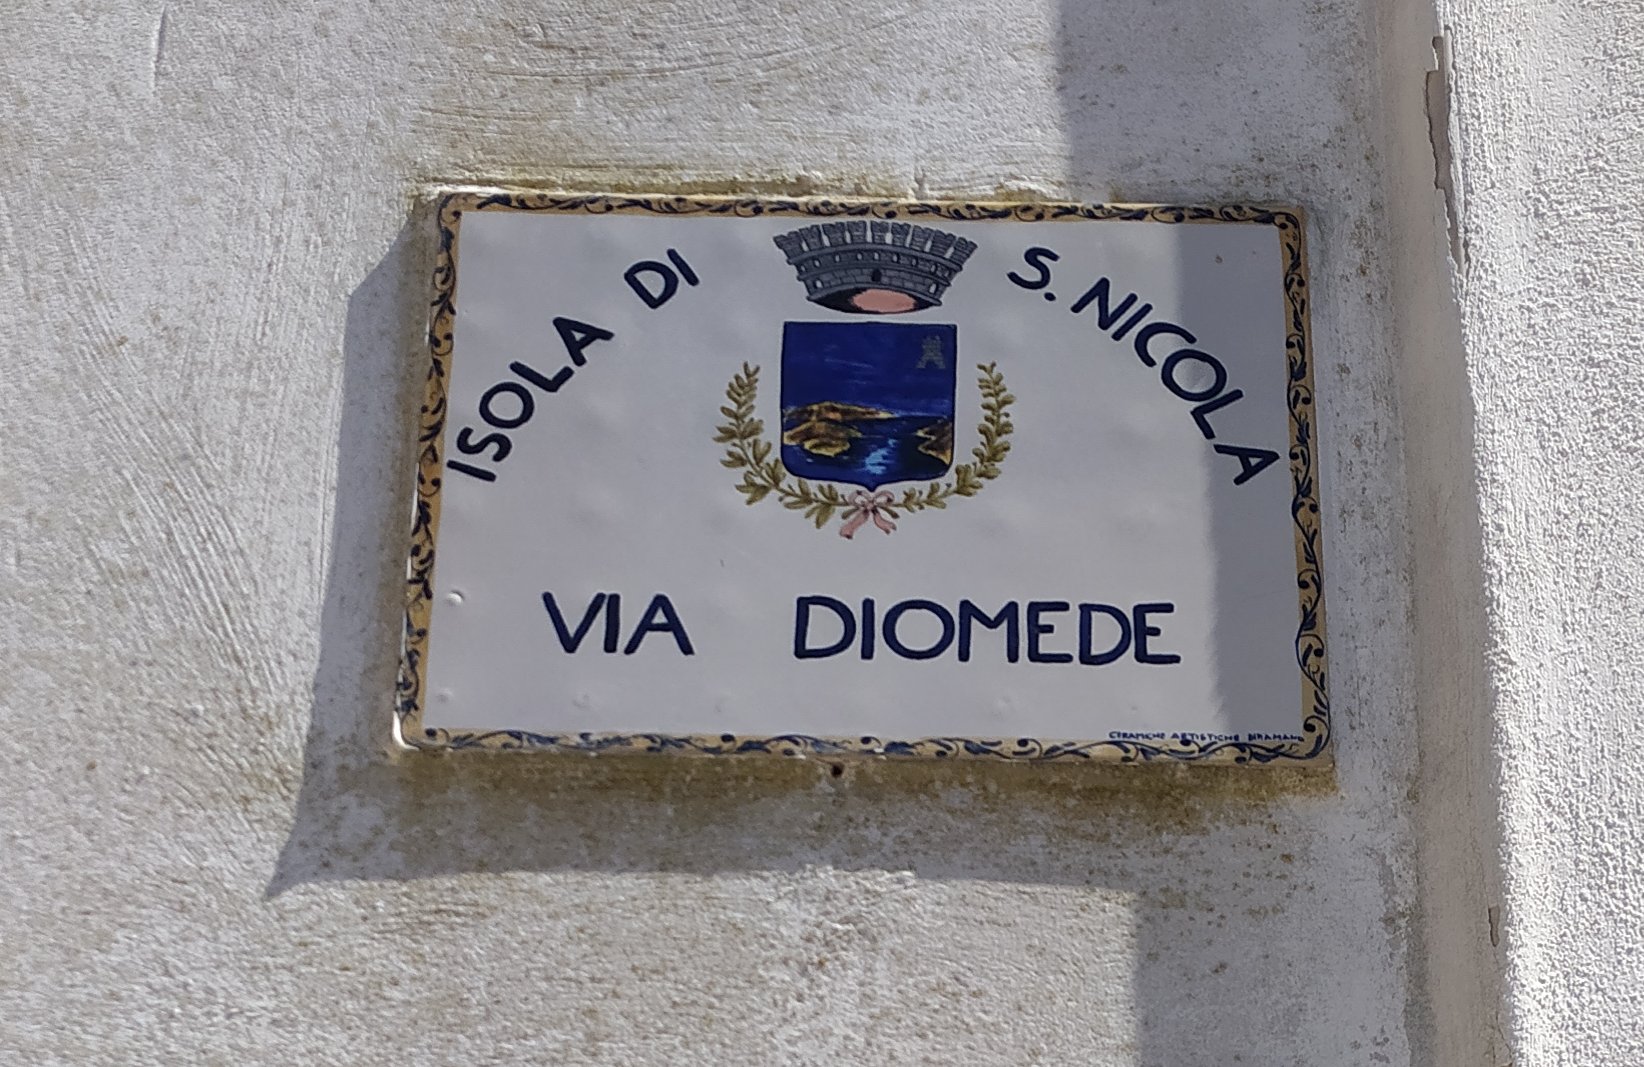 La tabella di via Diomede a San Nicola, foto di Fabio Fiori